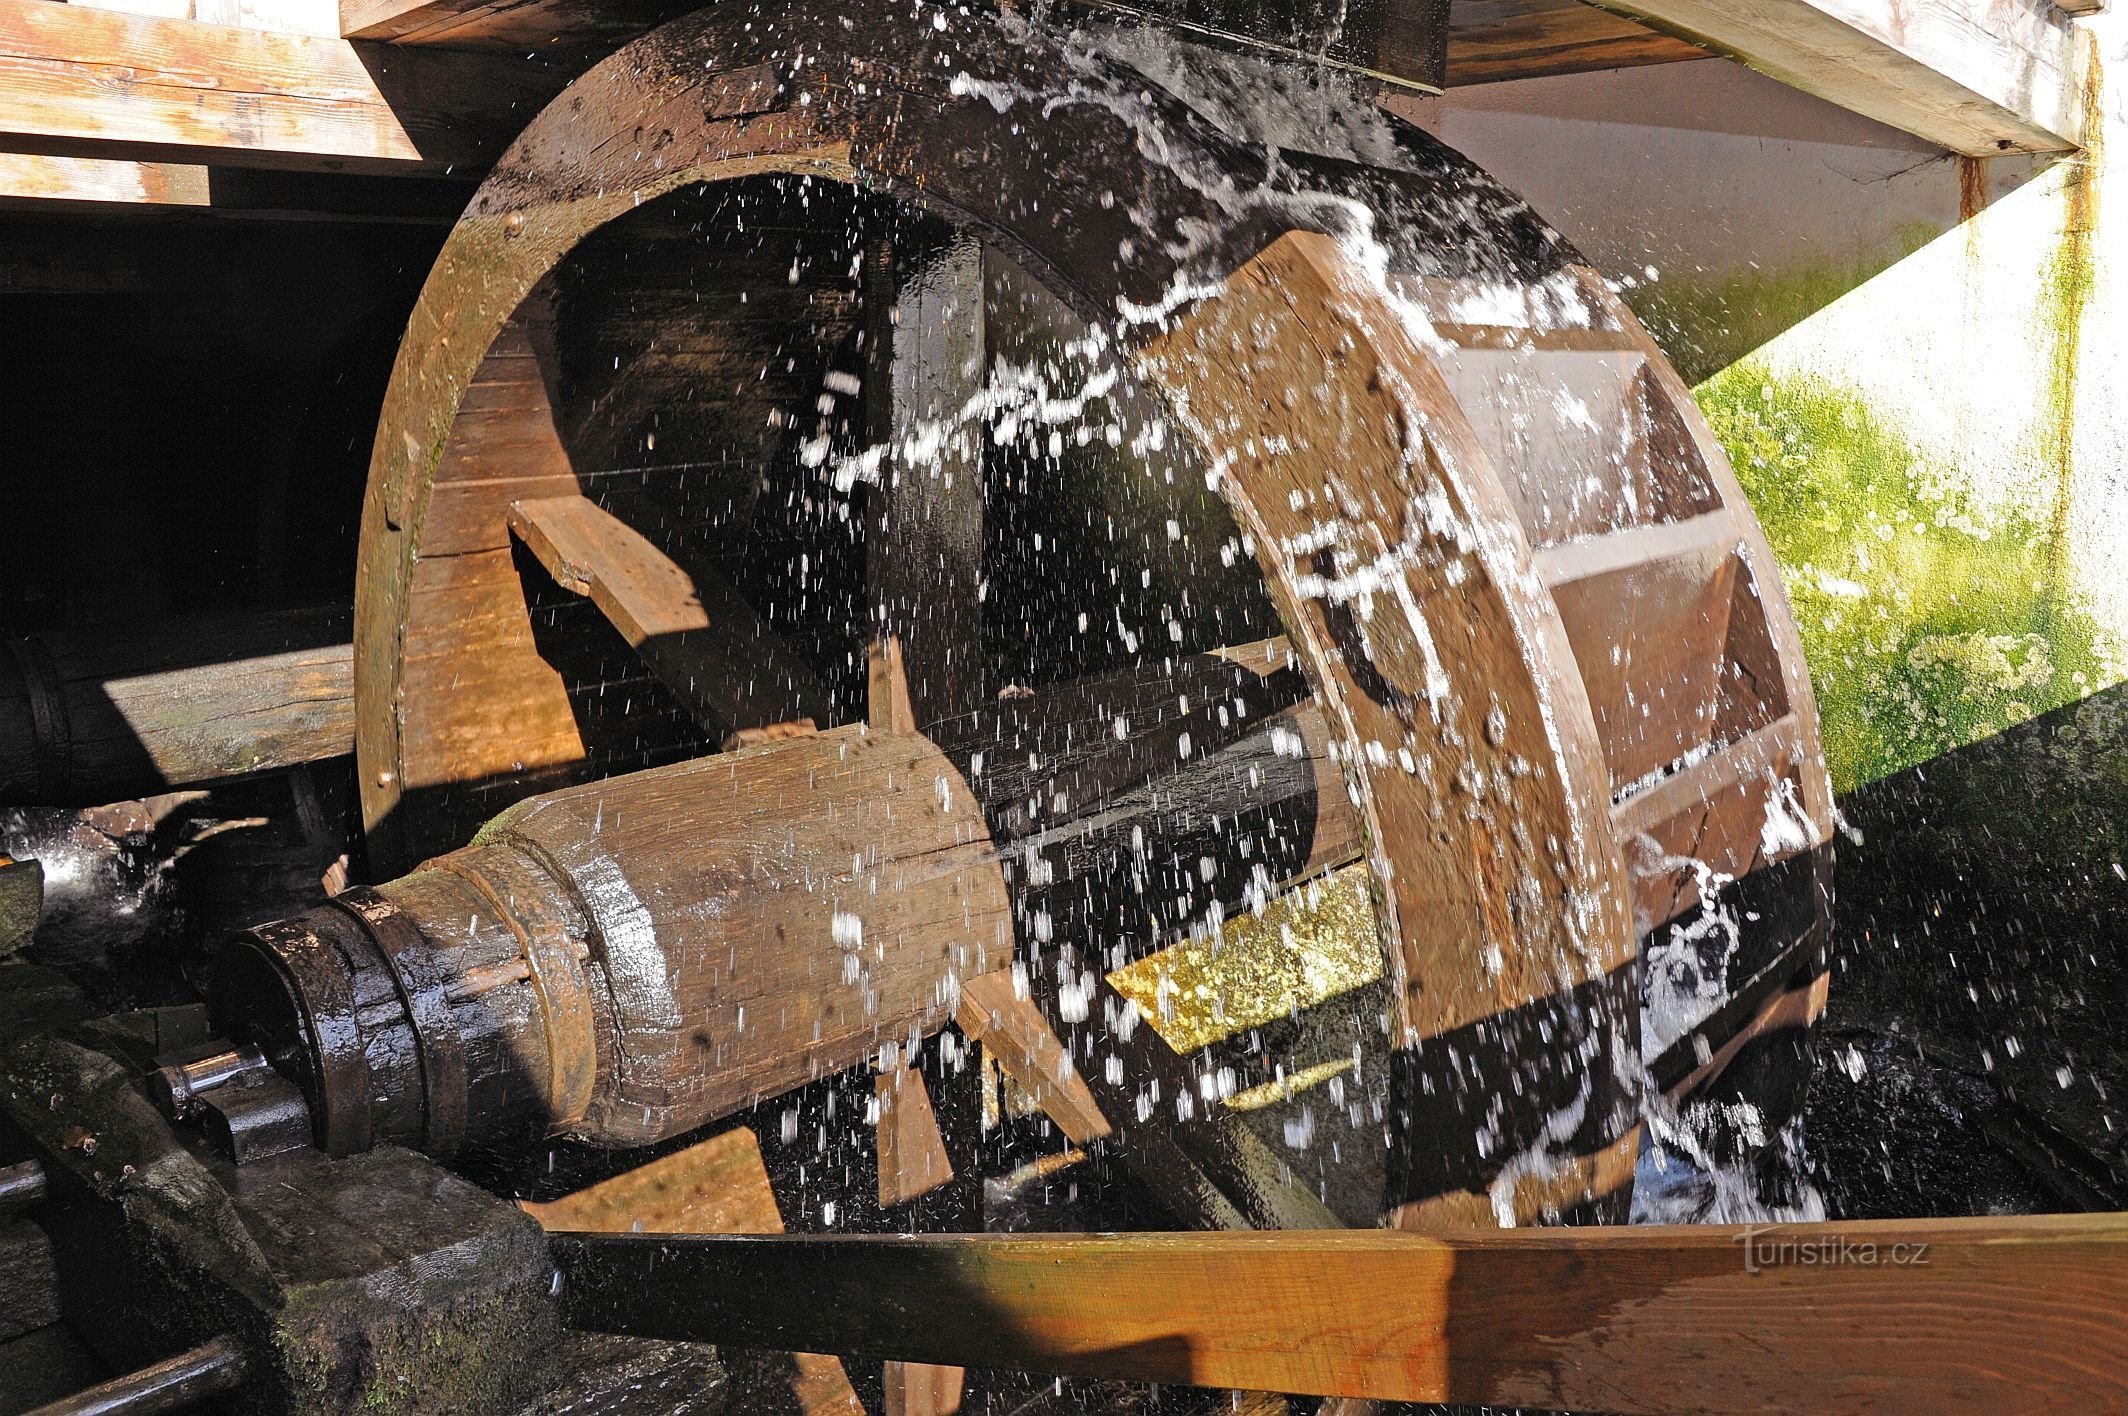 Uma roda d'água dirigindo o equipamento de um ferreiro